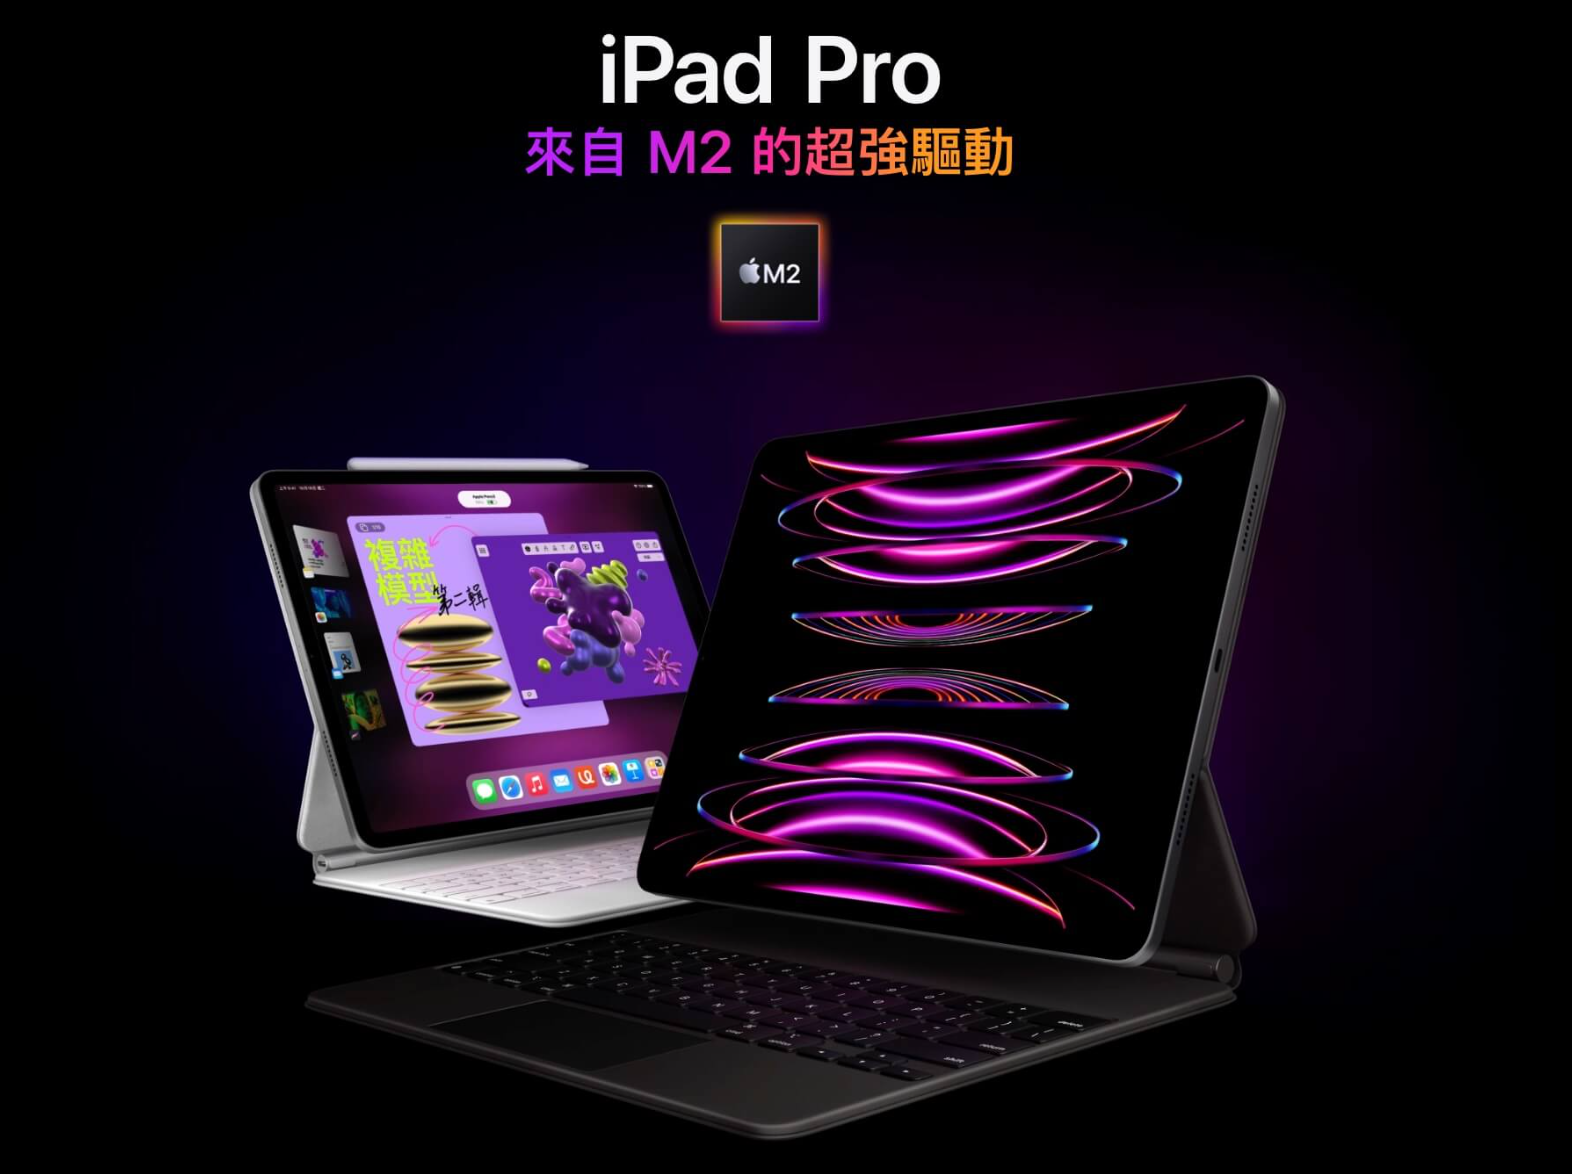 M2 iPad Pro 与M1 iPad Pro 的规格功能比较